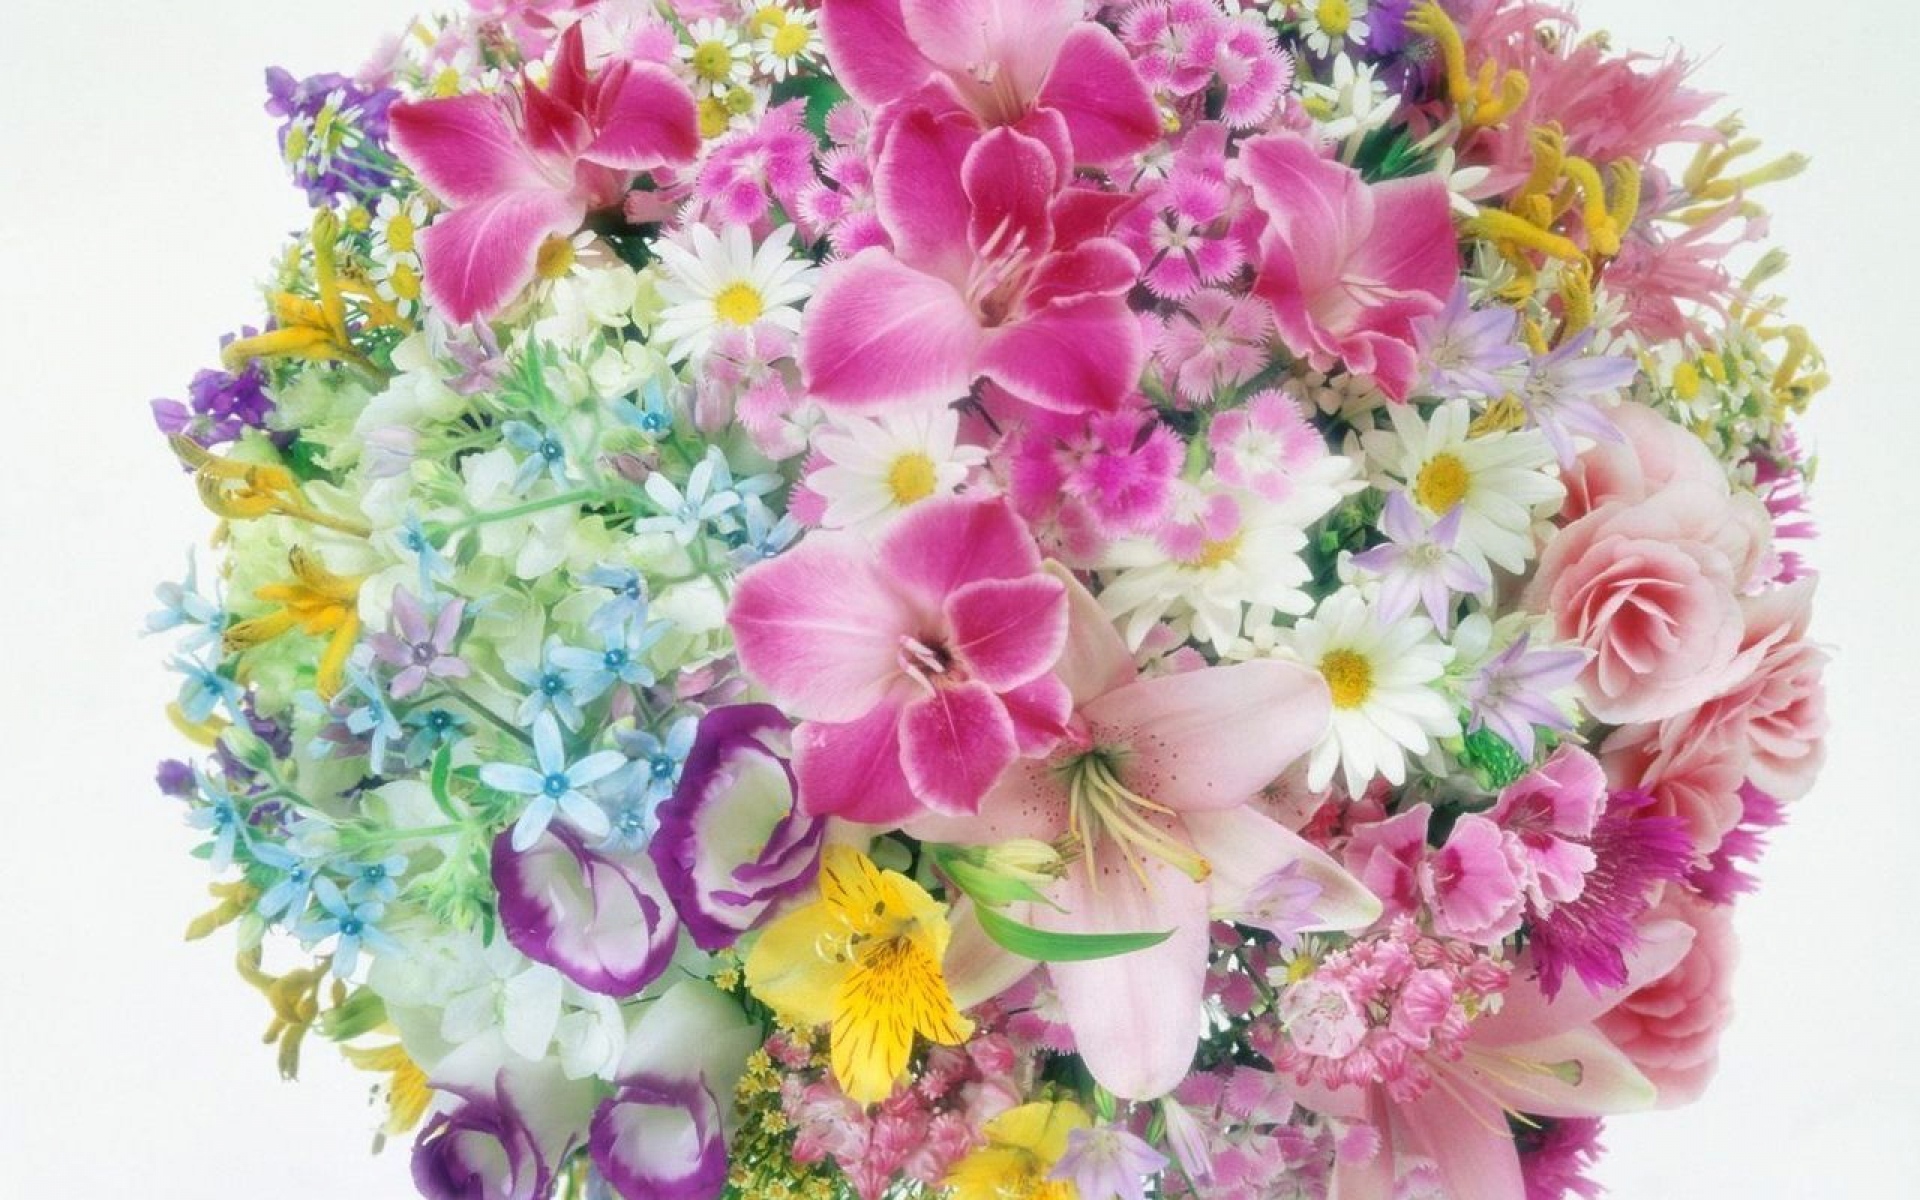 Картинки Лилии, розы, гвоздики, ромашки, цветы, букеты, воздушный шар, нежность фото и обои на рабочий стол